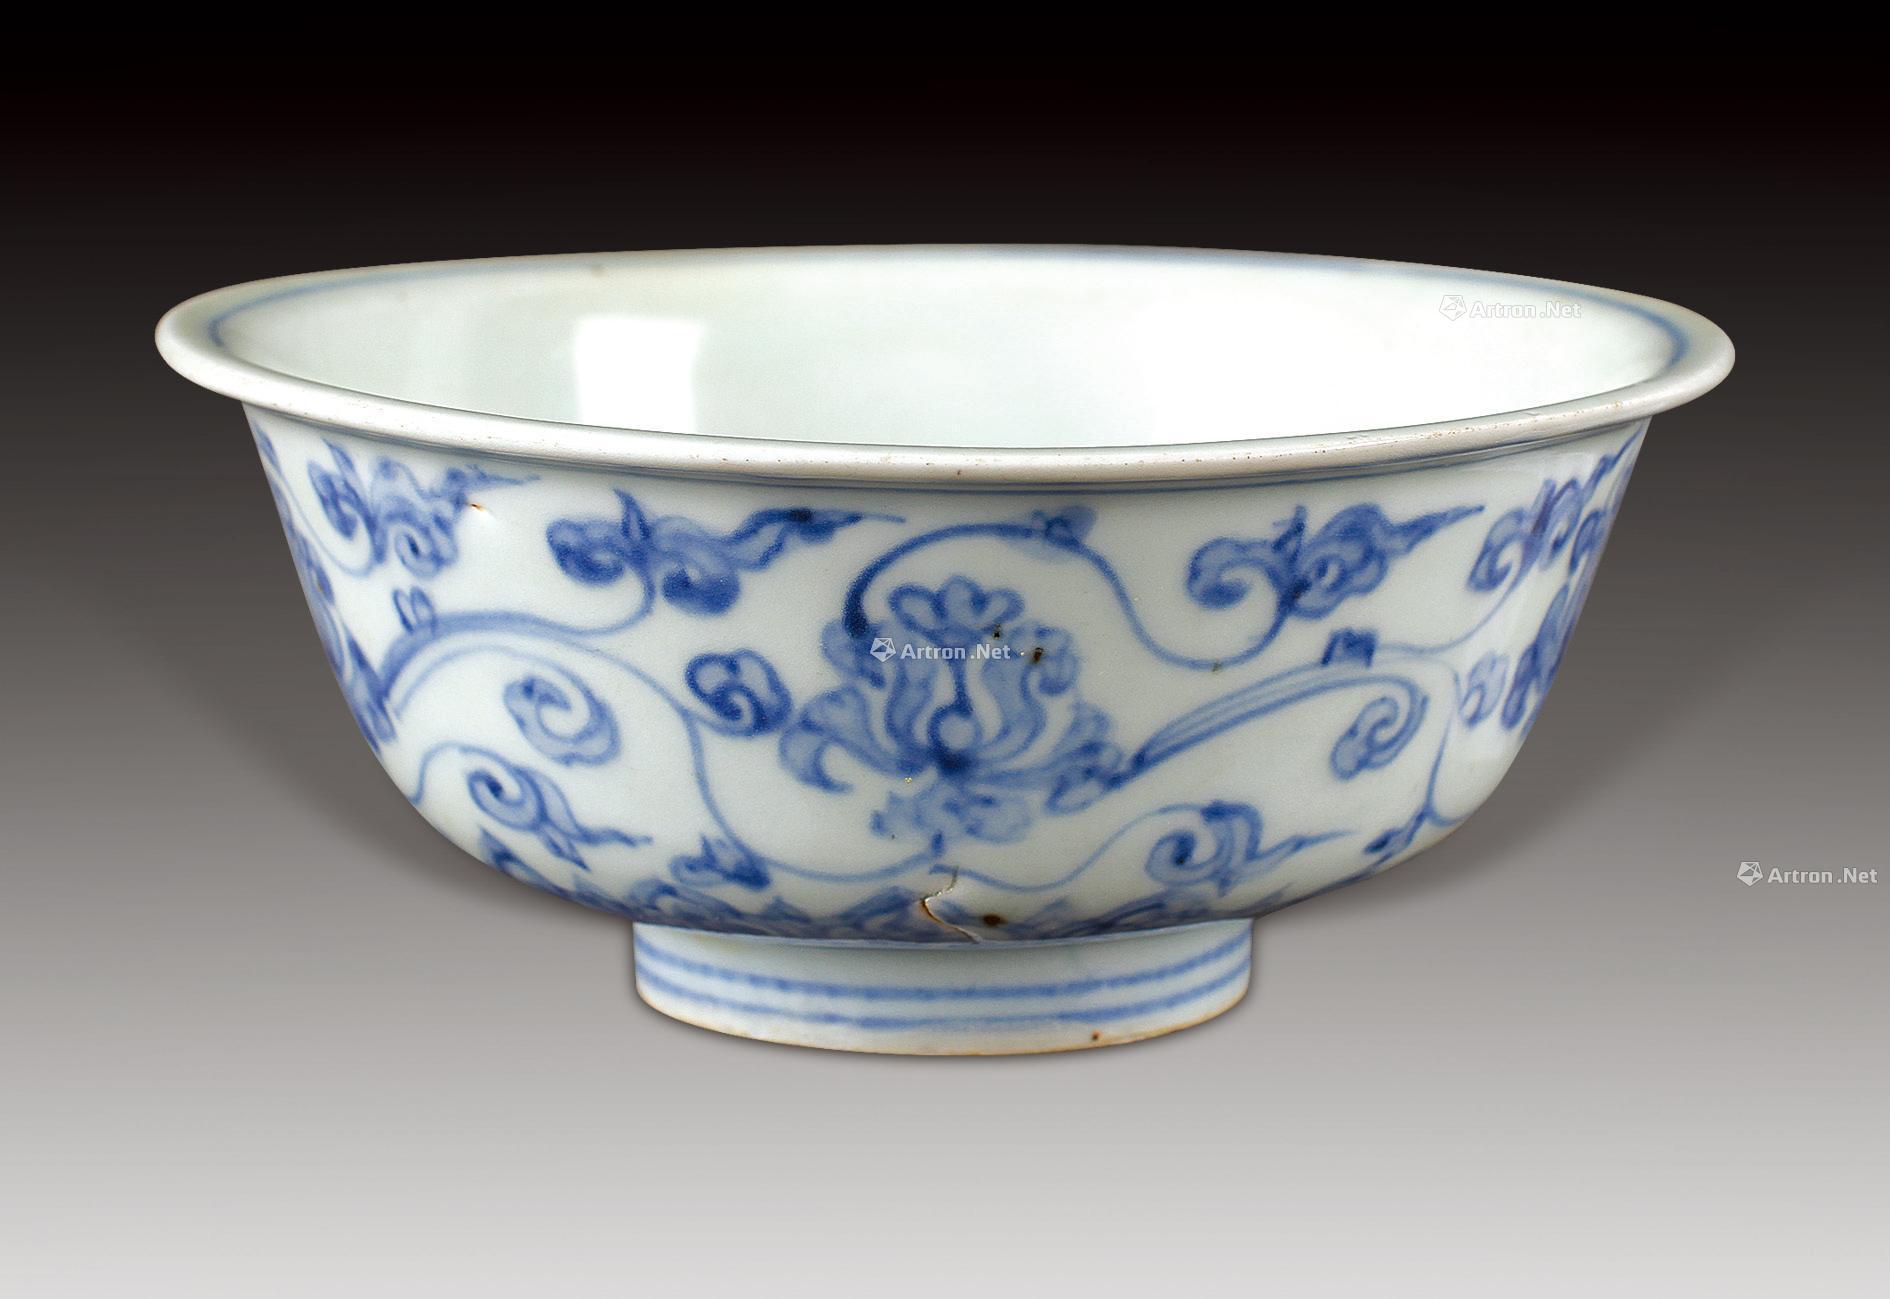 元钧窑小瓷碗 - 元代 - 巨野博物馆